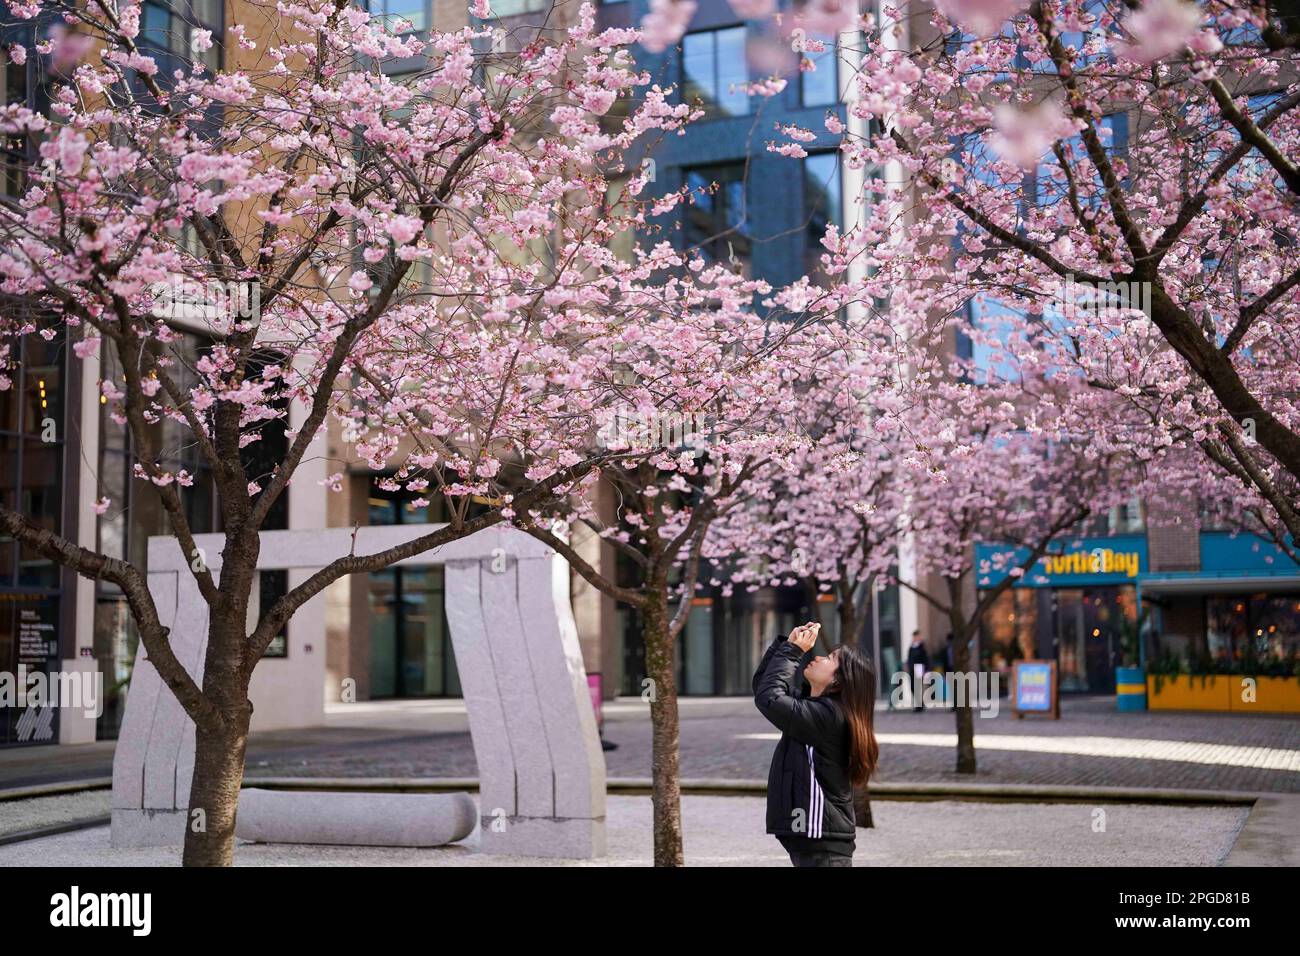 Le persone osservano e scattano fotografie degli alberi in fiore in piazza Oozells nel centro di Birmingham. Data immagine: Mercoledì 22 marzo 2023. Foto Stock